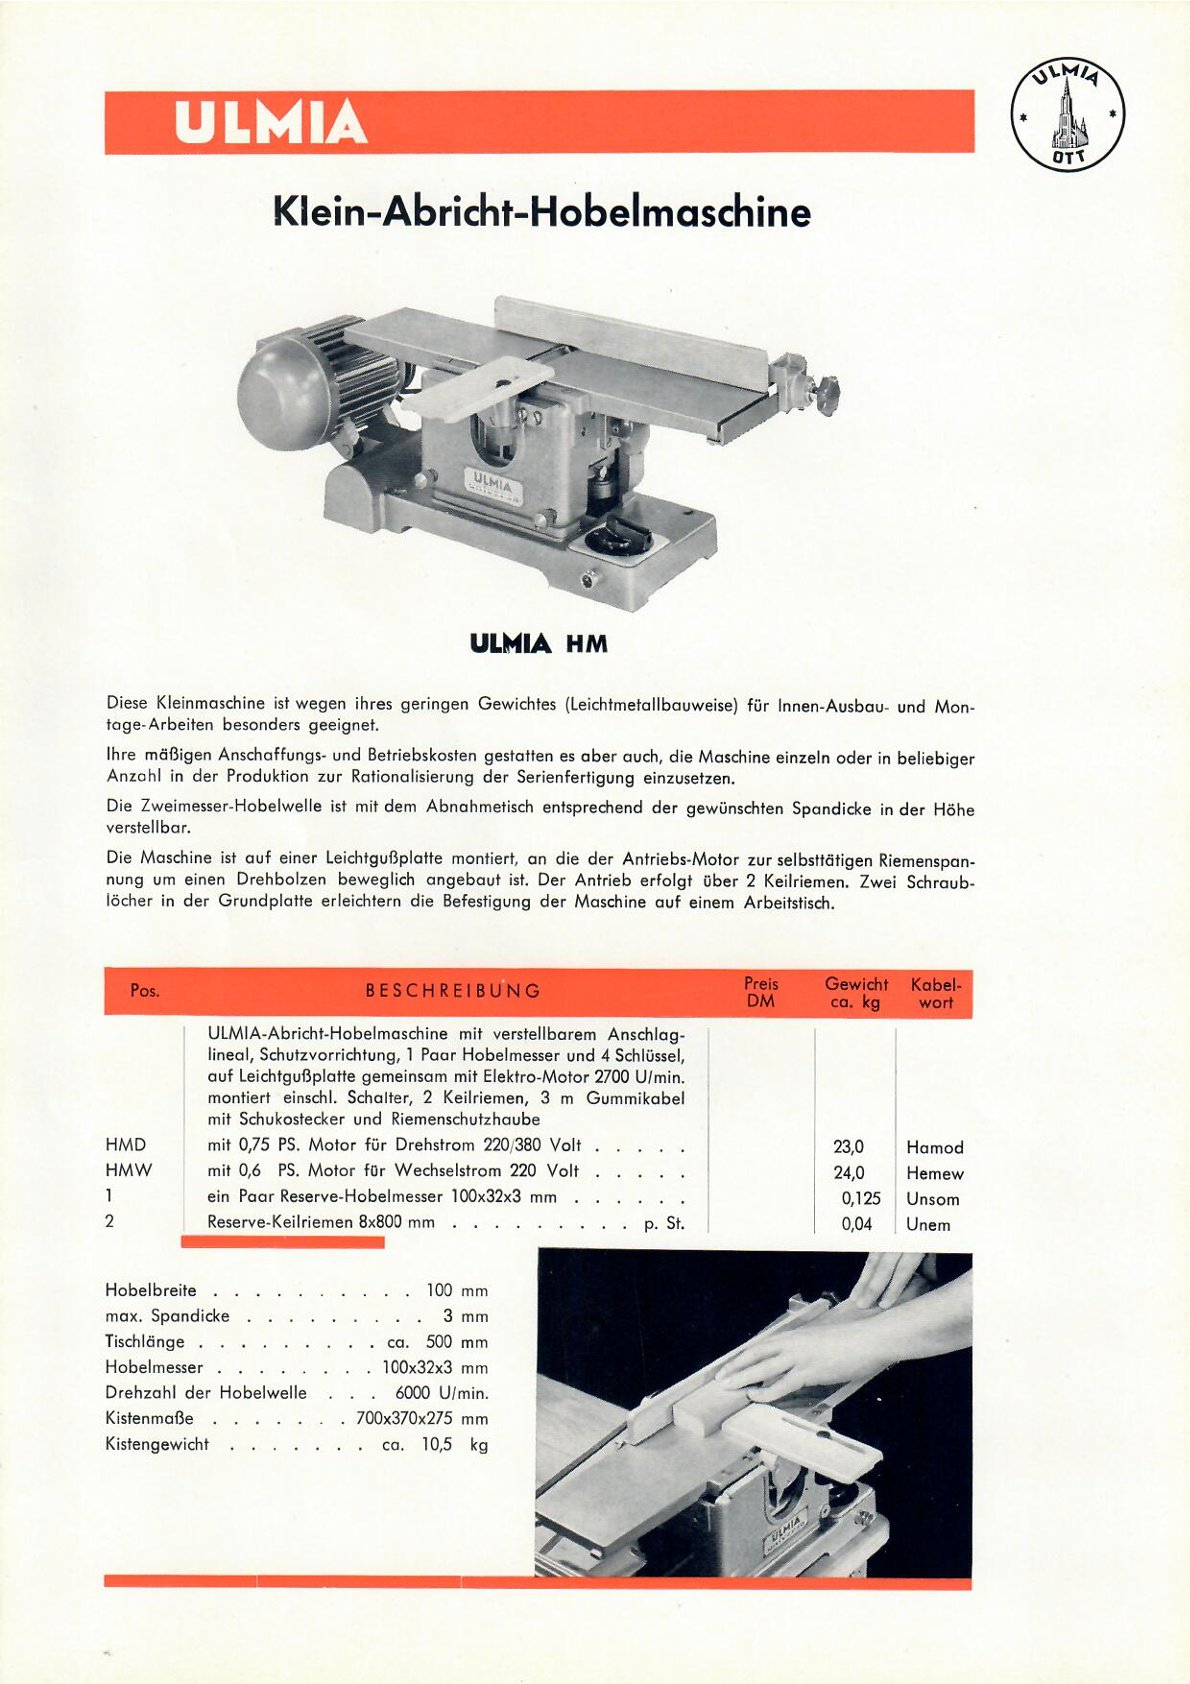 Ulmia HM Klein-Abricht-Hobelmaschine